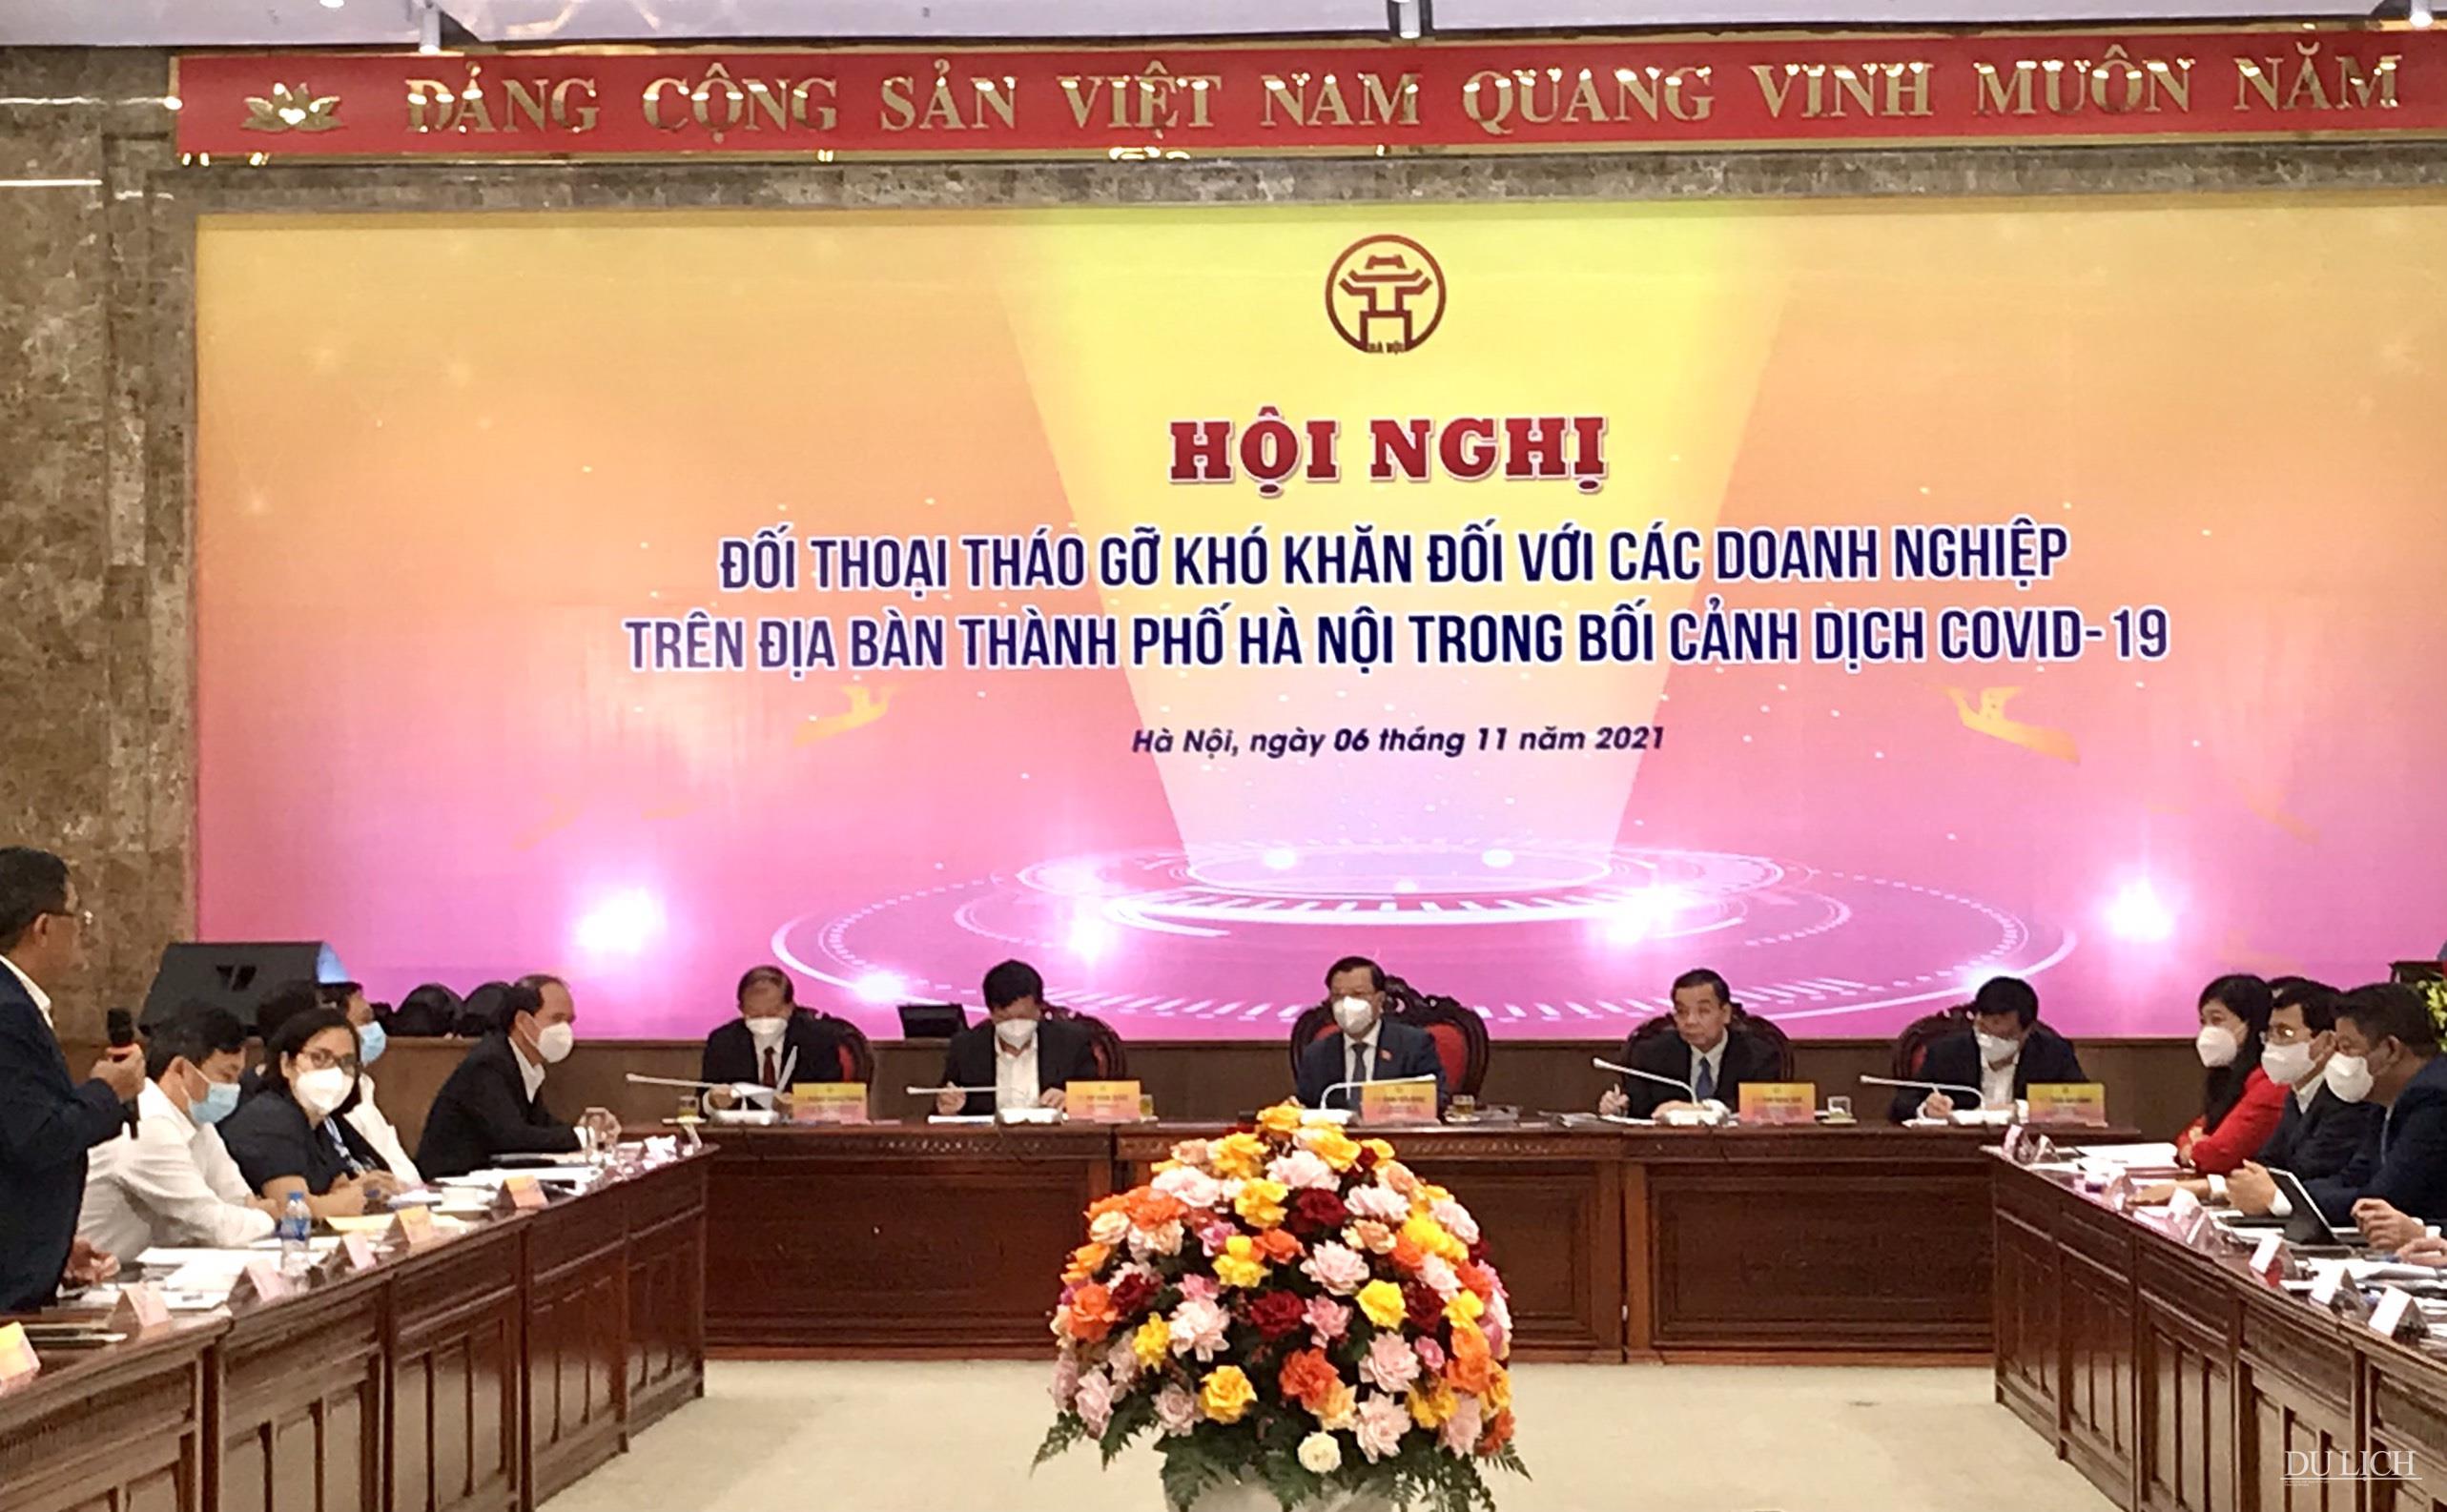 Hội nghị có sự tham dự của đông đảo đại diện bộ, ban, ngành, hiệp hội, doanh nghiệp trên địa bàn Hà Nội